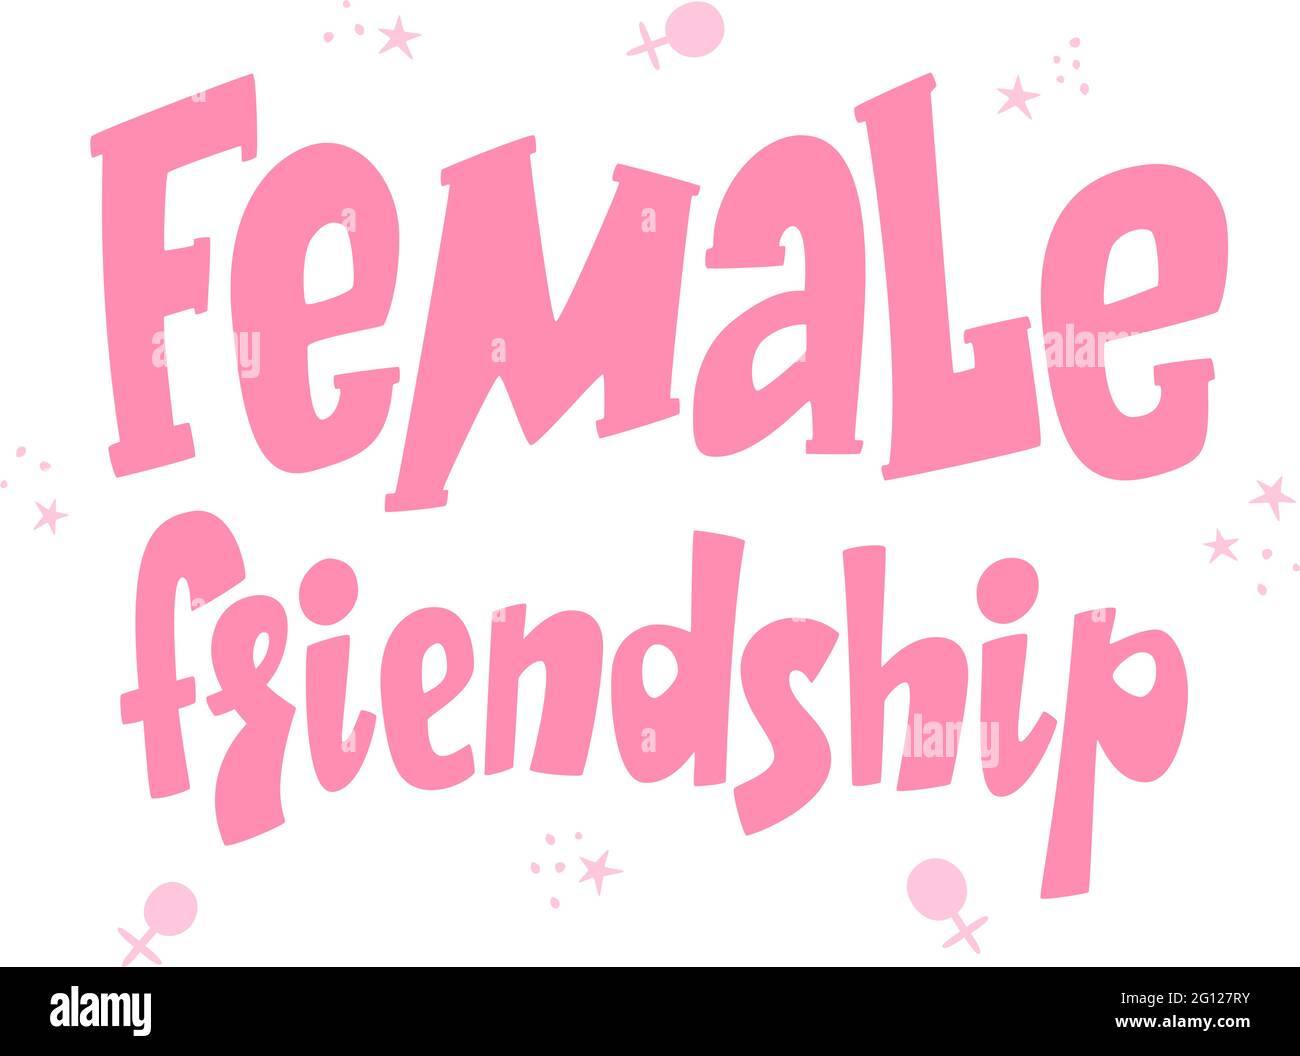 Freundschaftsschriftenposter für Frauen, Freundinnen, Postkarte und Grußkartendesign für Feminismus, Freundschaftskonzept, Geschlechterstereotypen, Vektorzeichen Stock Vektor